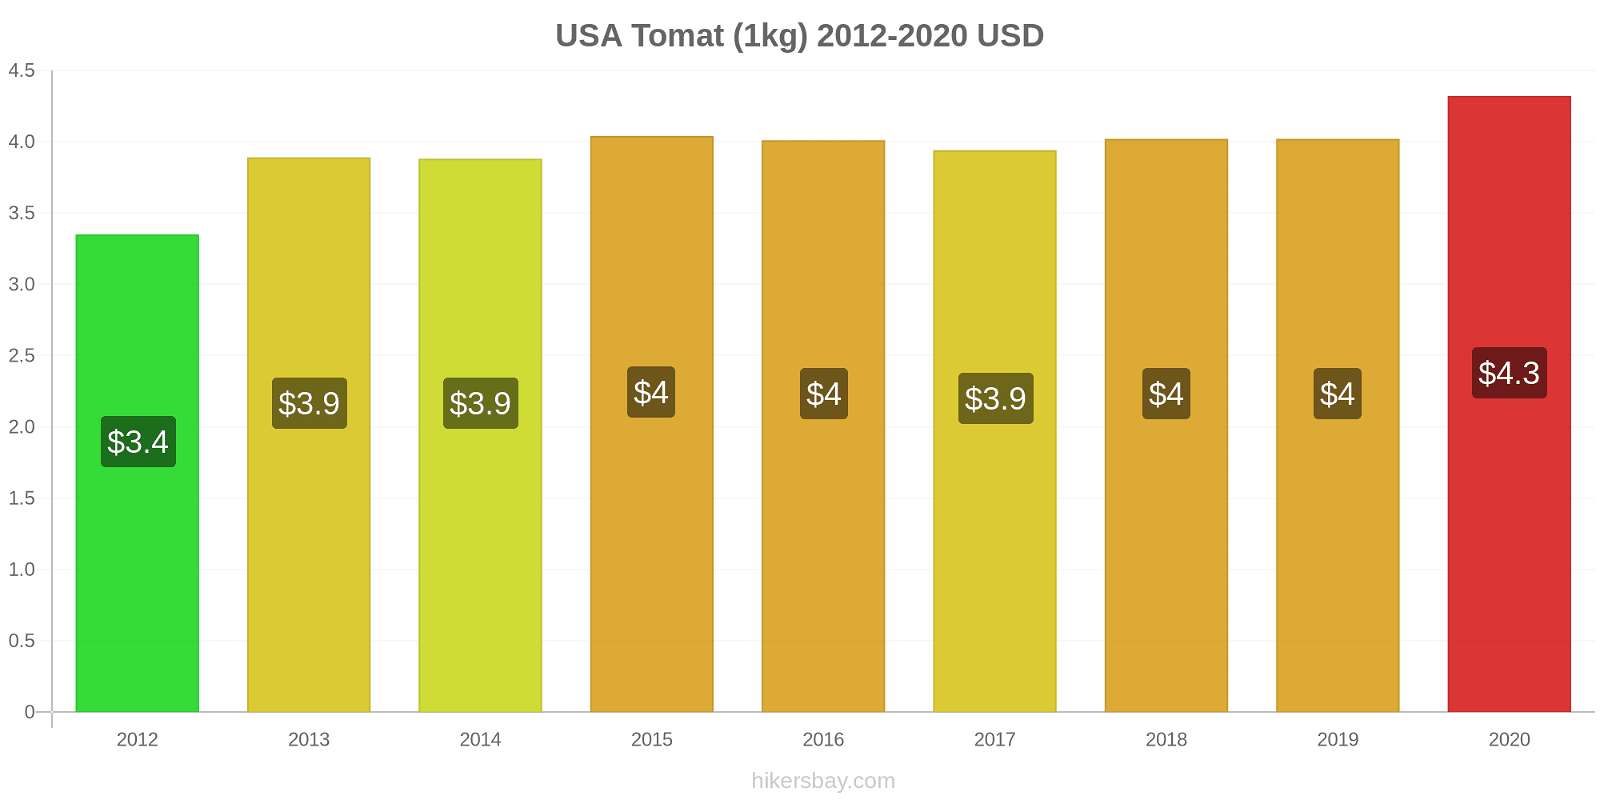 USA prisændringer Tomat (1kg) hikersbay.com